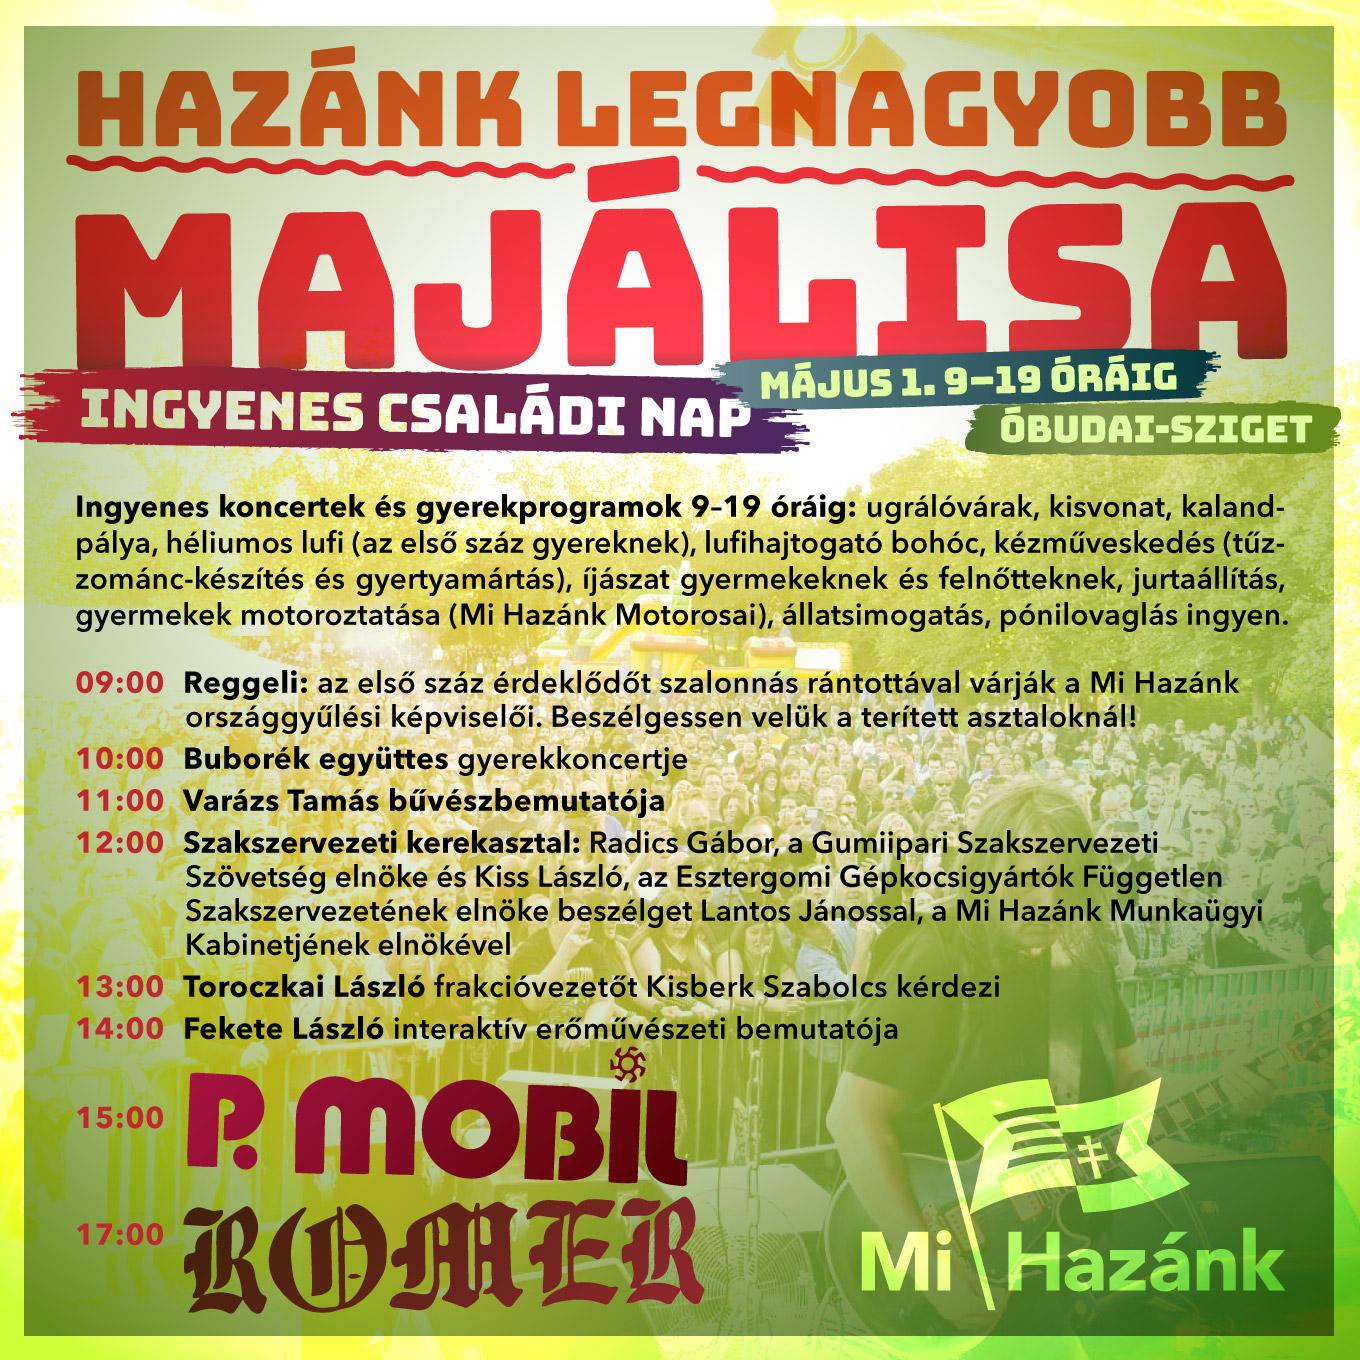 Magyarország legnagyobb majálisát szervezi meg a Mi Hazánk az Óbudai-szigeten!